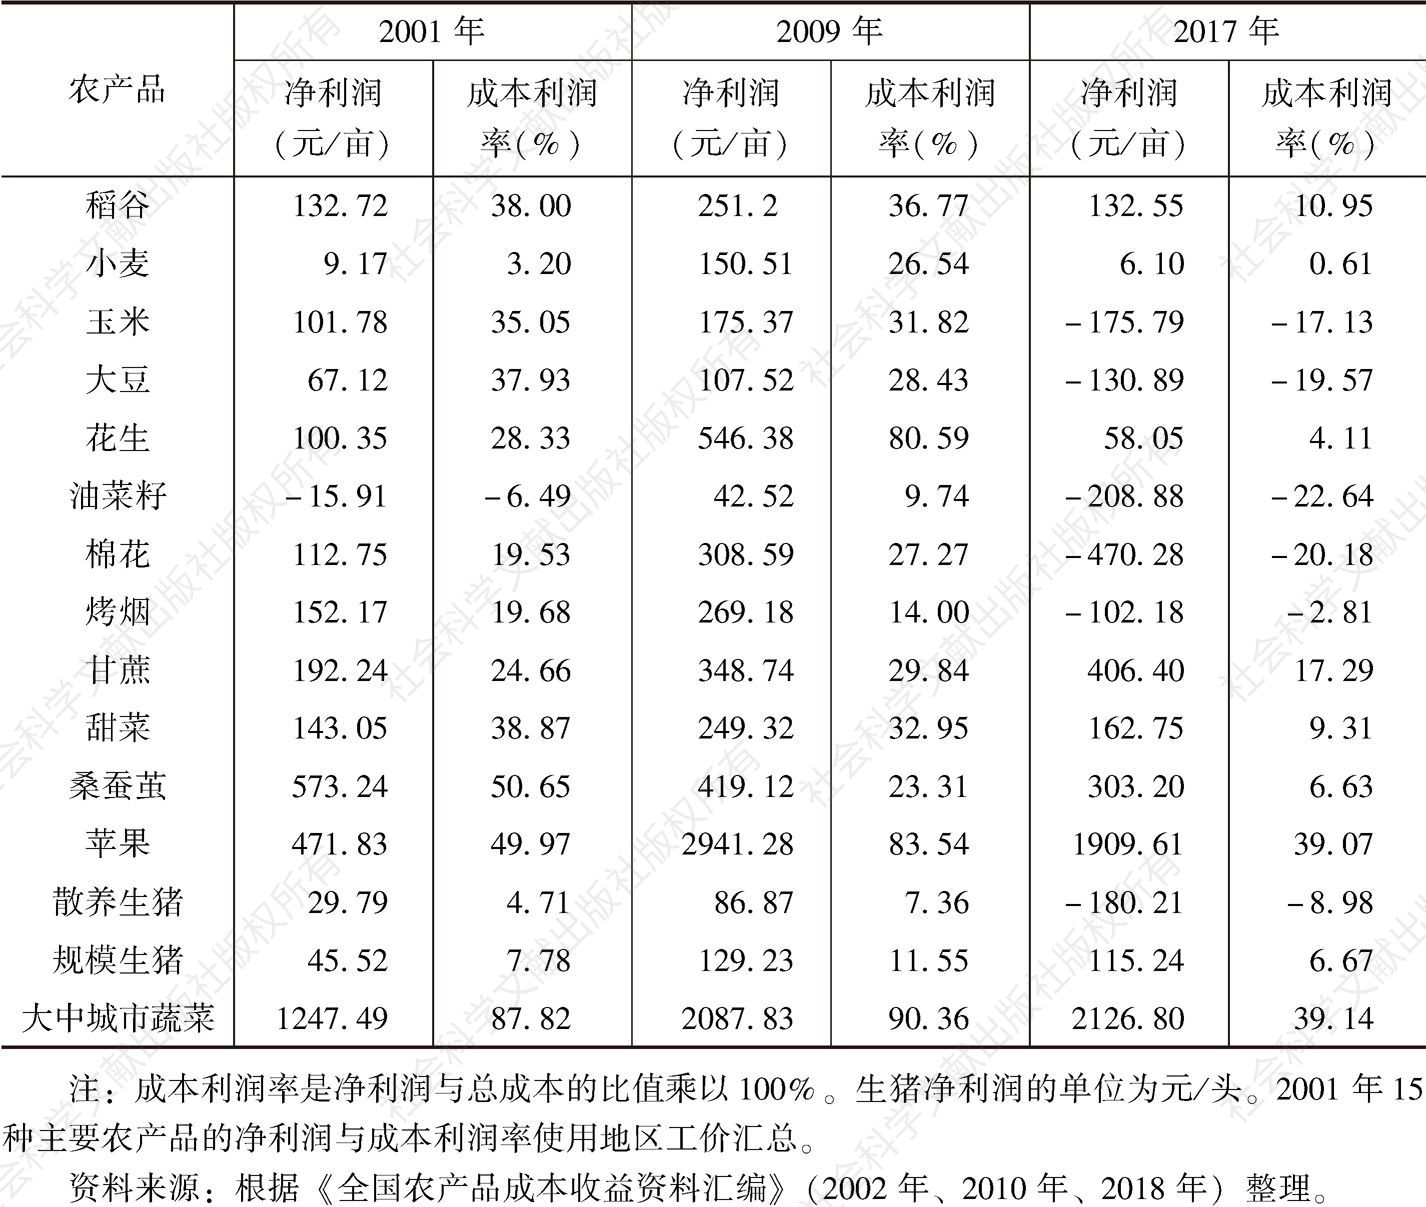 表4-4 中国主要农产品经营利润及其变化情况